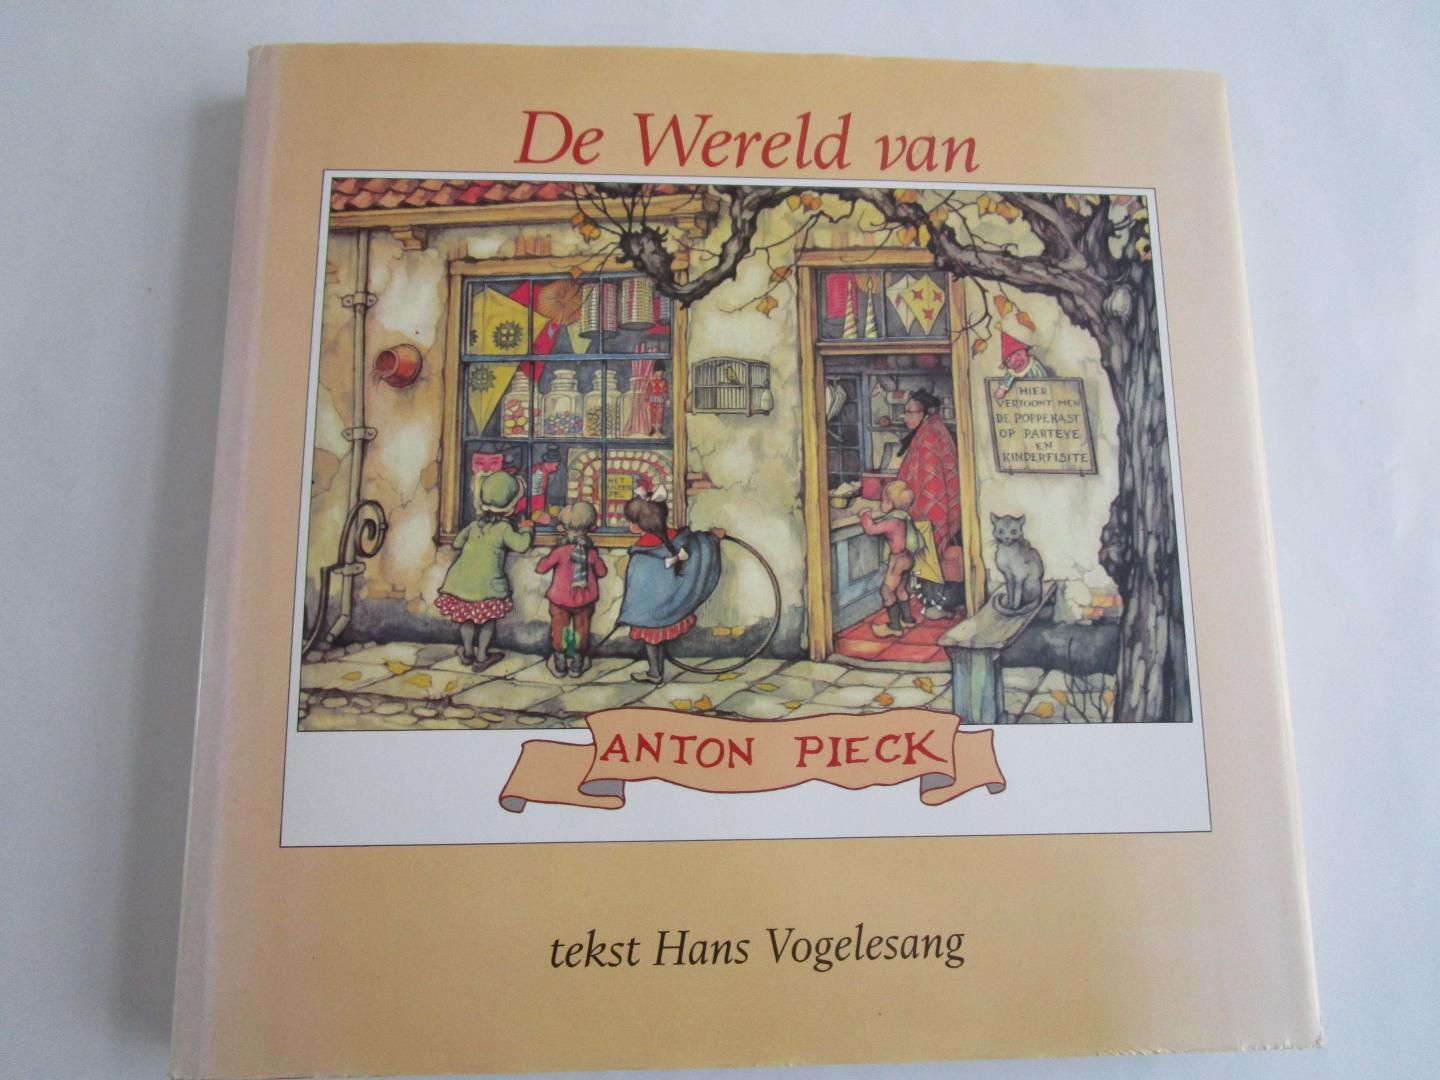 Vogelesang, Hans  (tekst) - ANTON PIECK; De Wereld van Anton Pieck